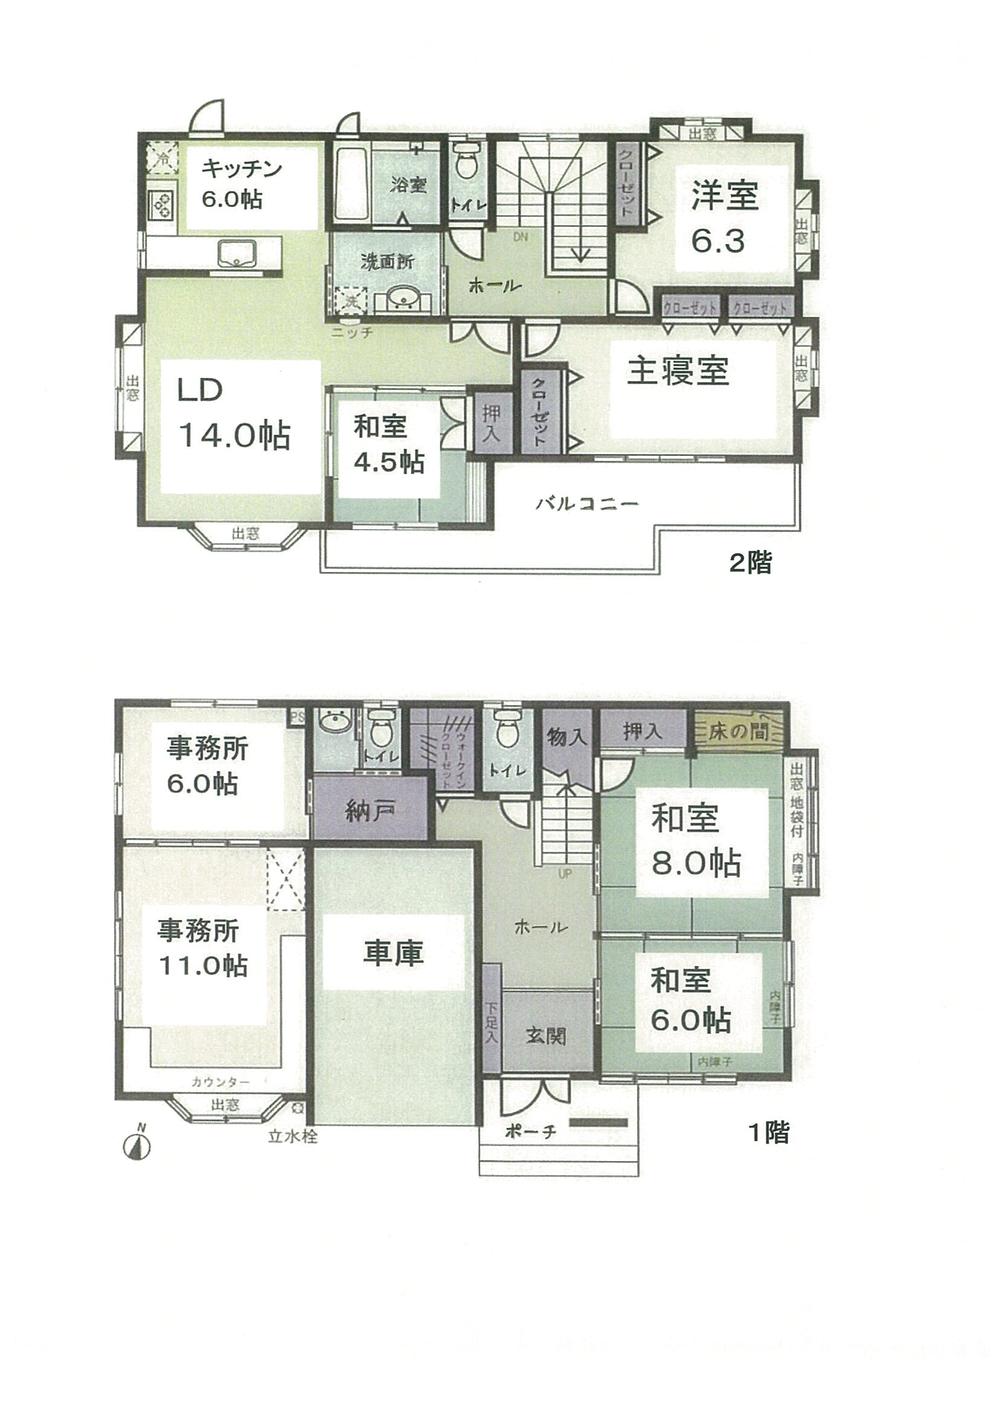 Floor plan. 46 million yen, 7LDK, Land area 171.68 sq m , Building area 172.29 sq m